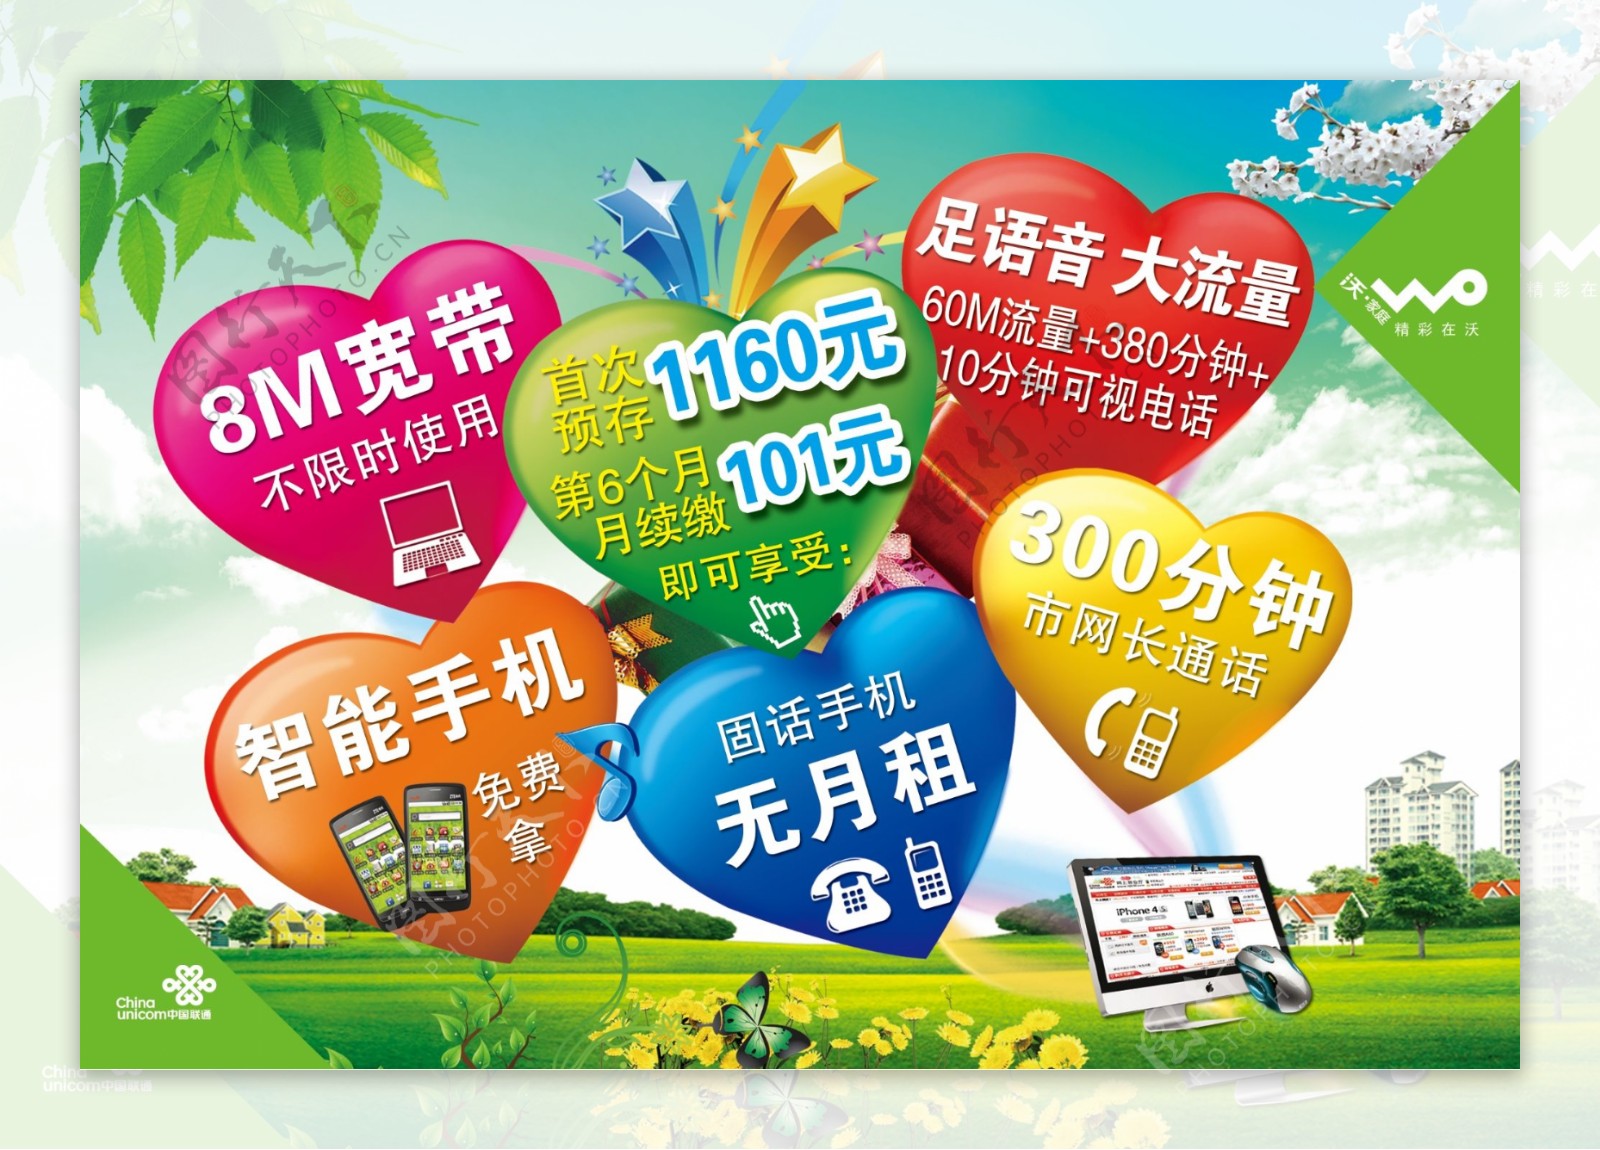 中国联通沃家庭广告设计模板